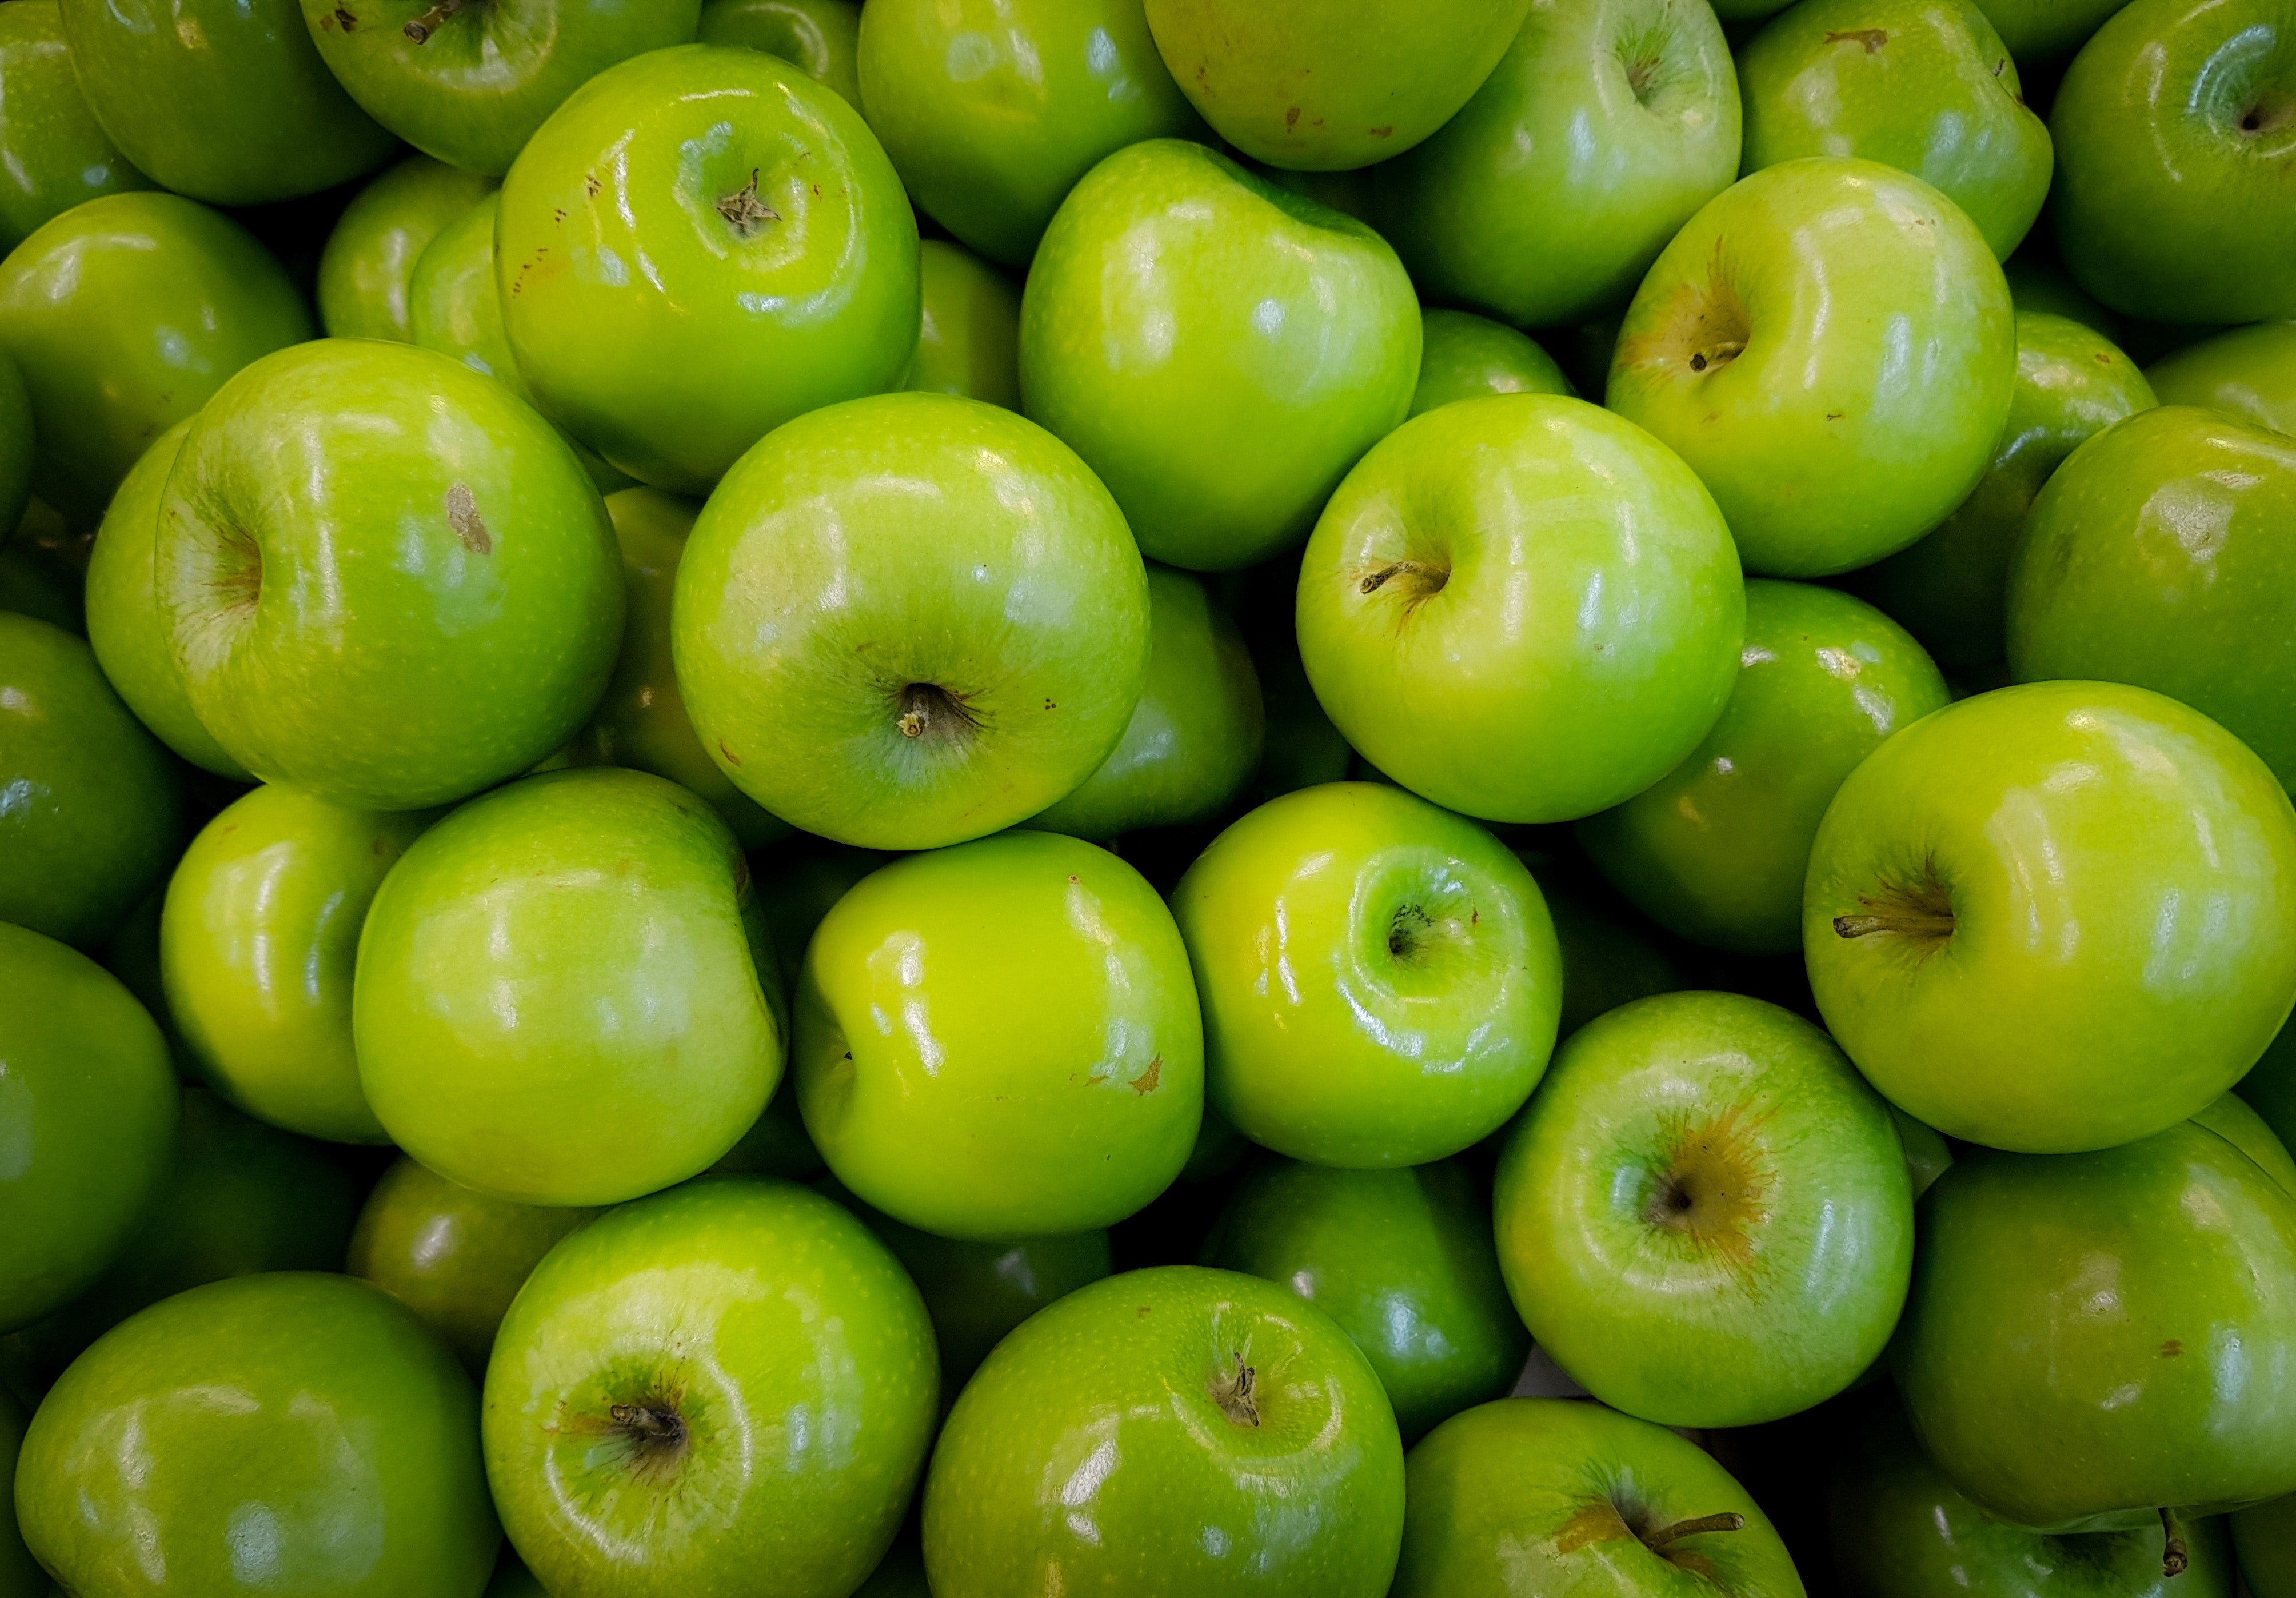 Coupe Pomme, Eplucheur de Pommes 12 Lames, Coupe-Fruits 10 cm avec Acier  Inoxydable Idéal pour Les Pommes et Les Poires (Argent) 